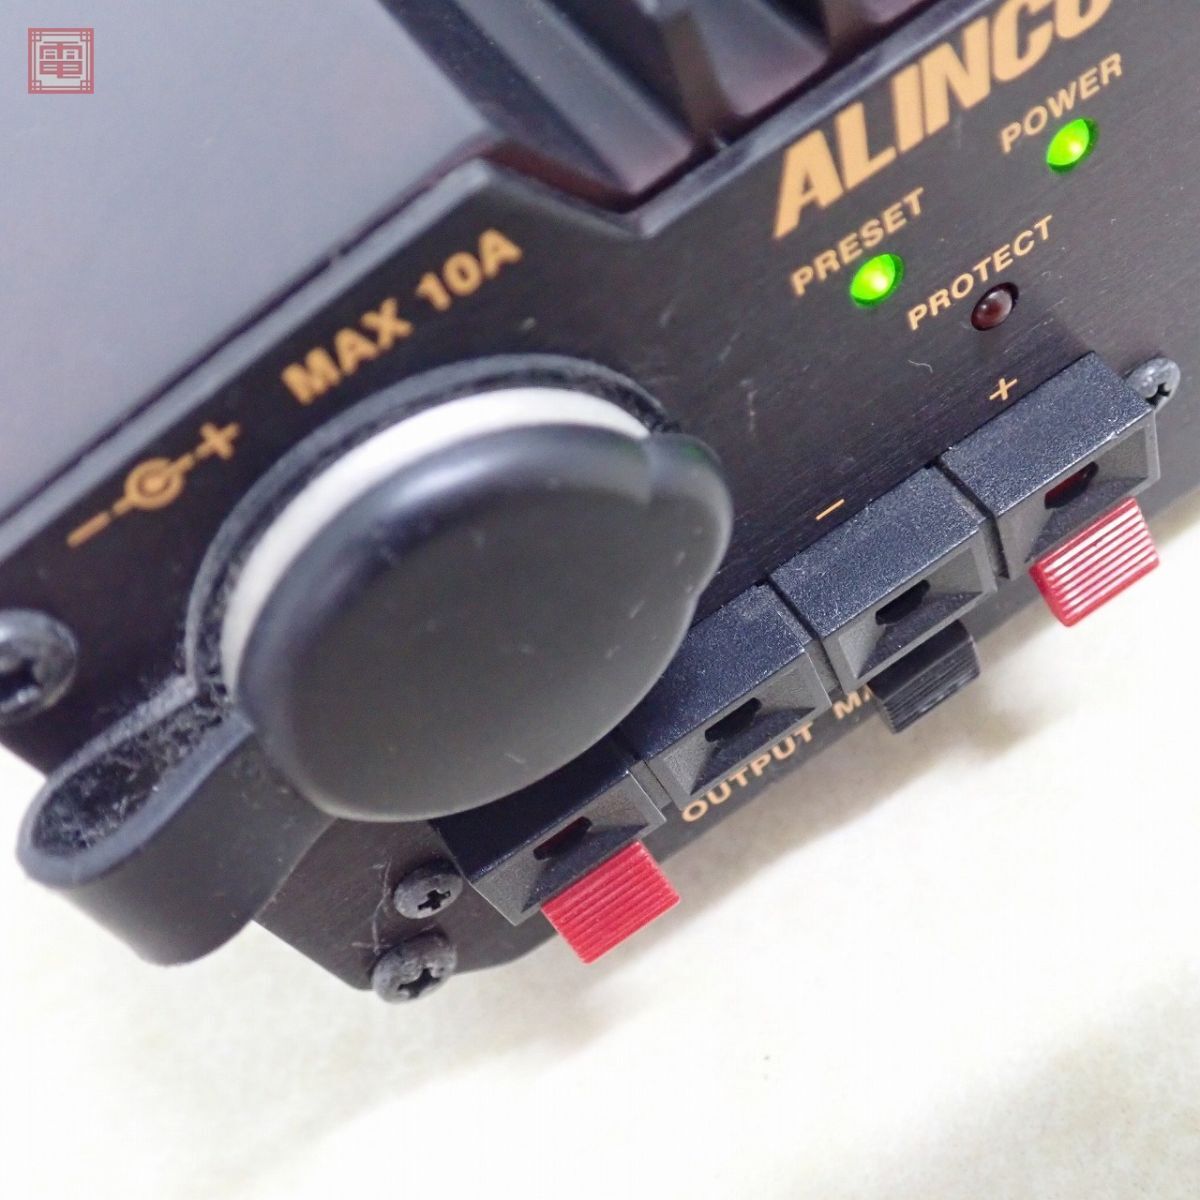  Alinco DM-330MV DC5V~15V MAX32A DC power supply direct current stabilizing supply original box attaching ALINCO[20